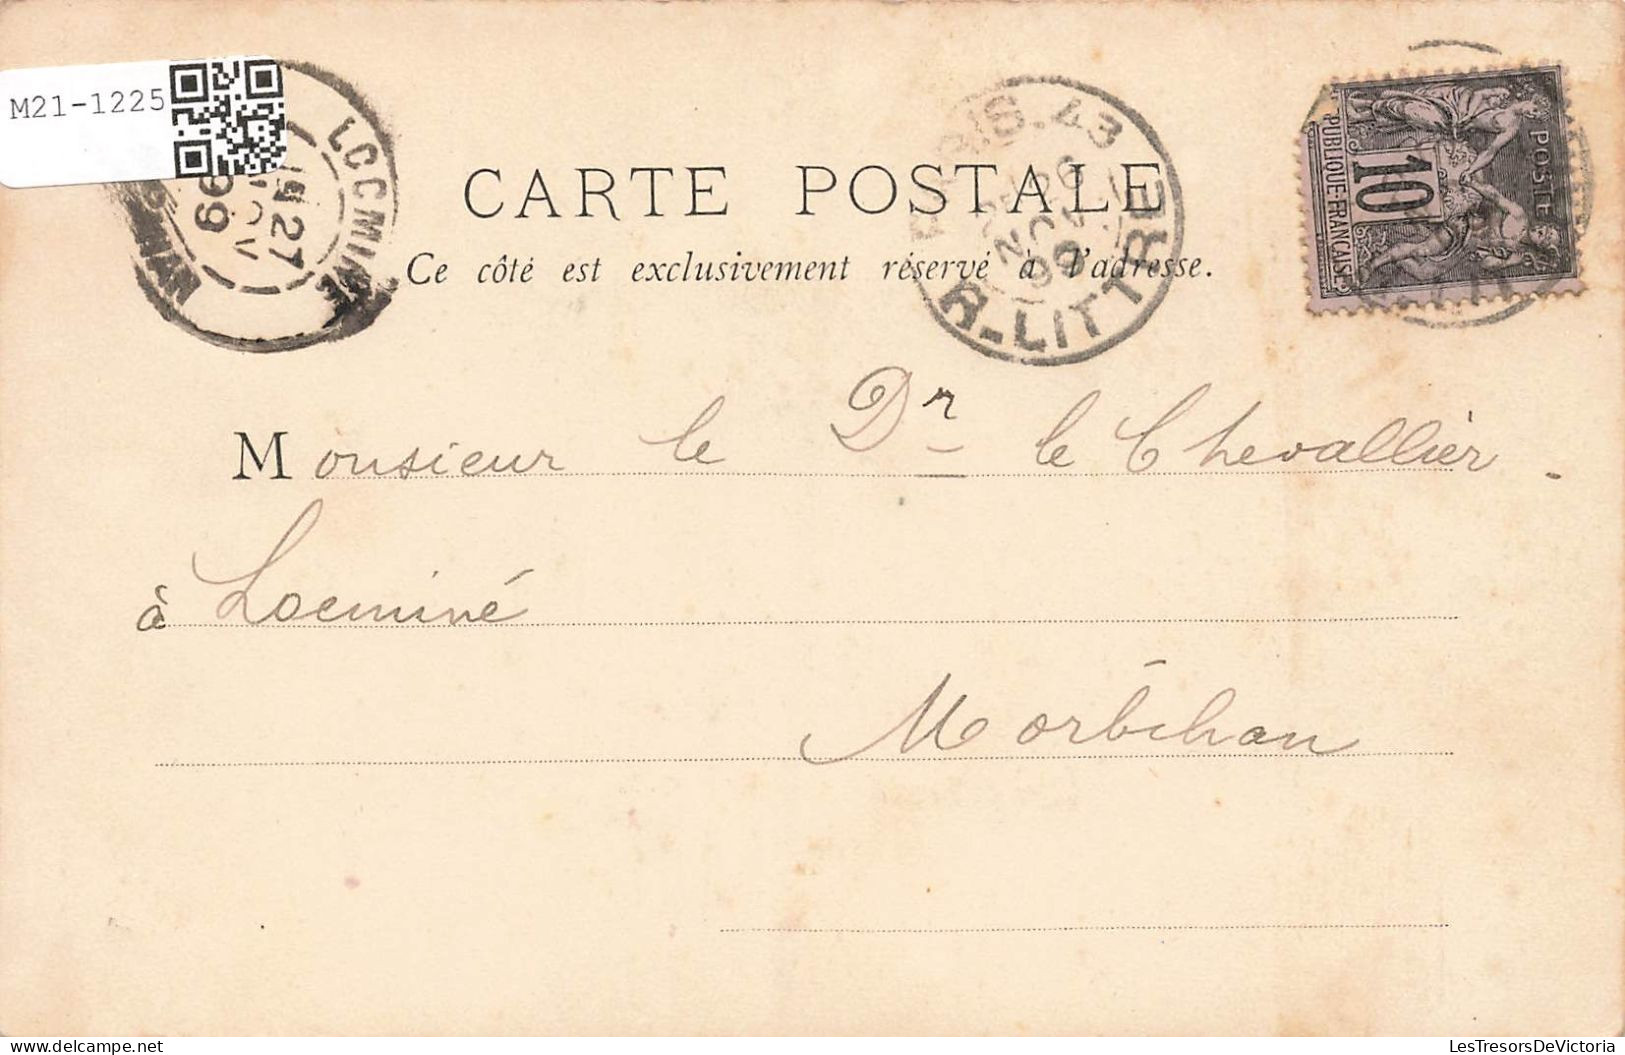 FRANCE - Paris - Rue De Rivoli - Carte Postale Ancienne - Markten, Pleinen